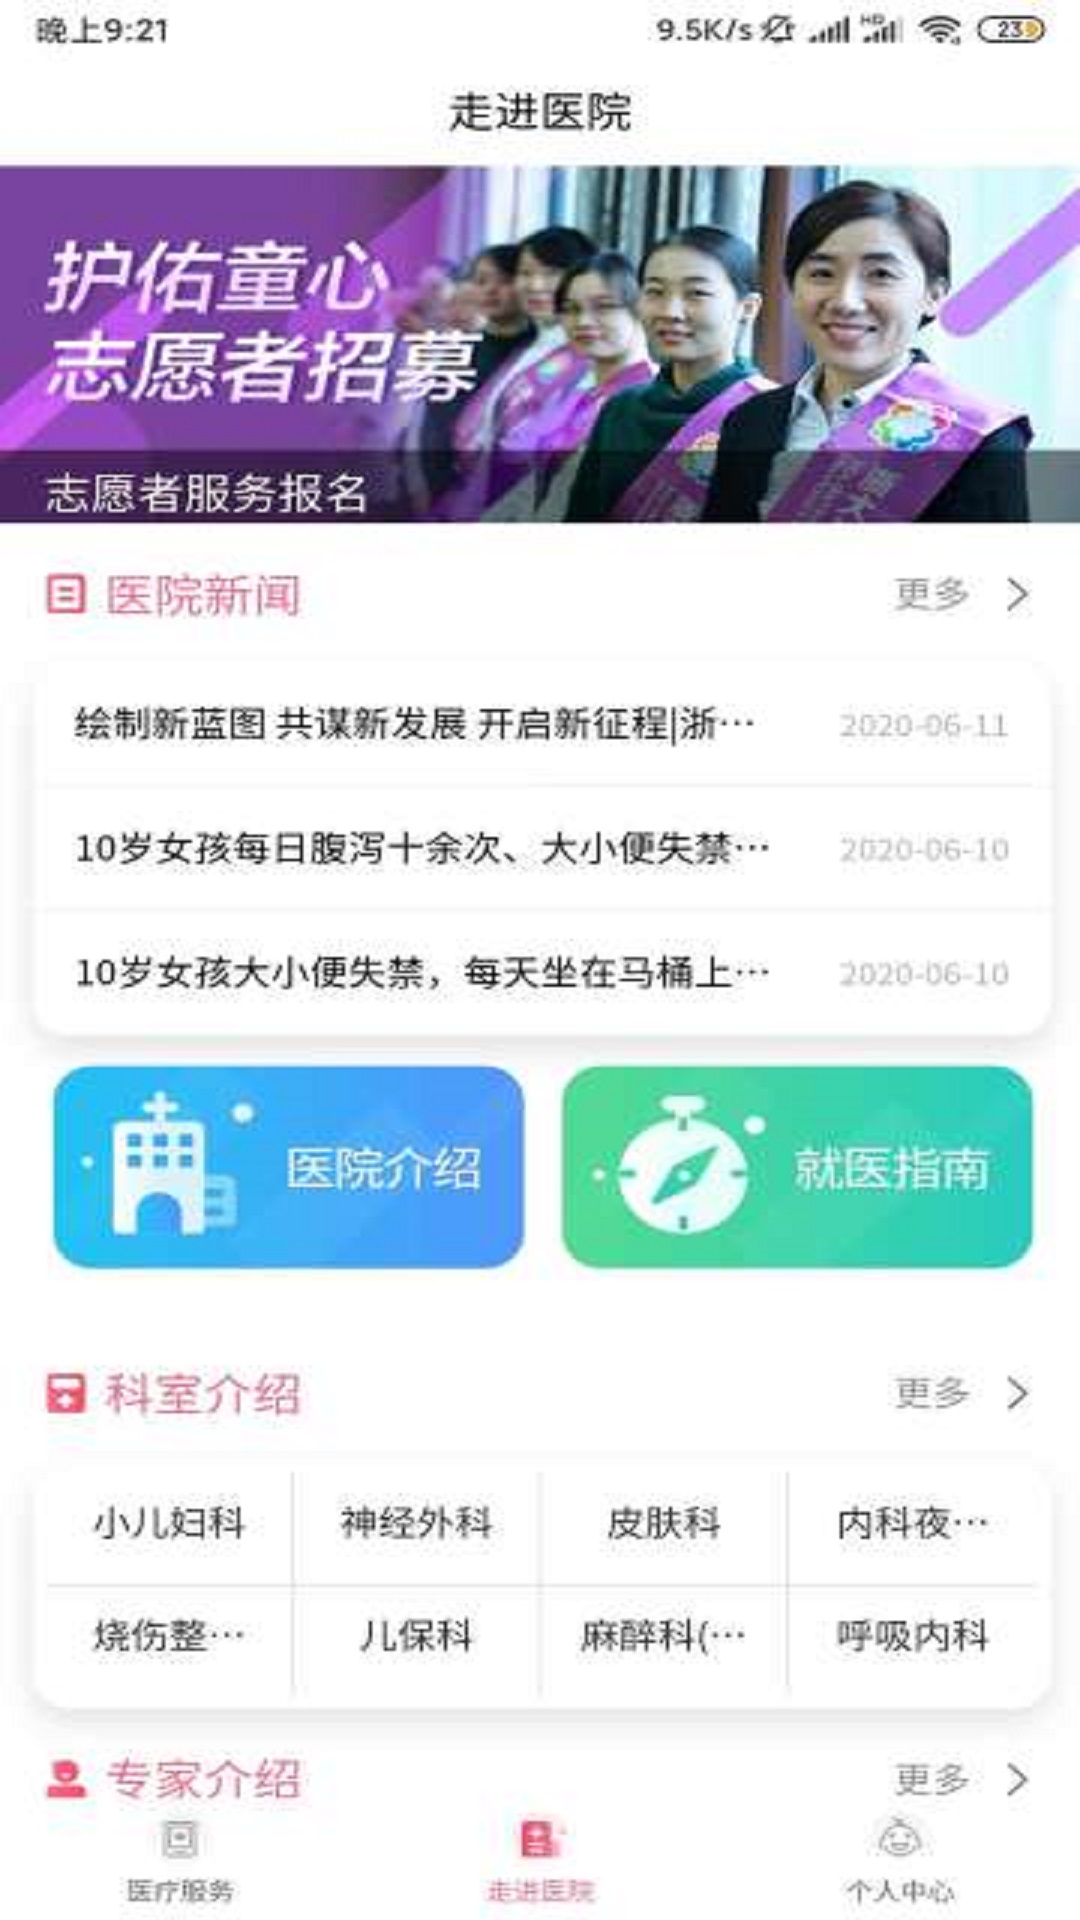 浙大儿院App最新版在线下载